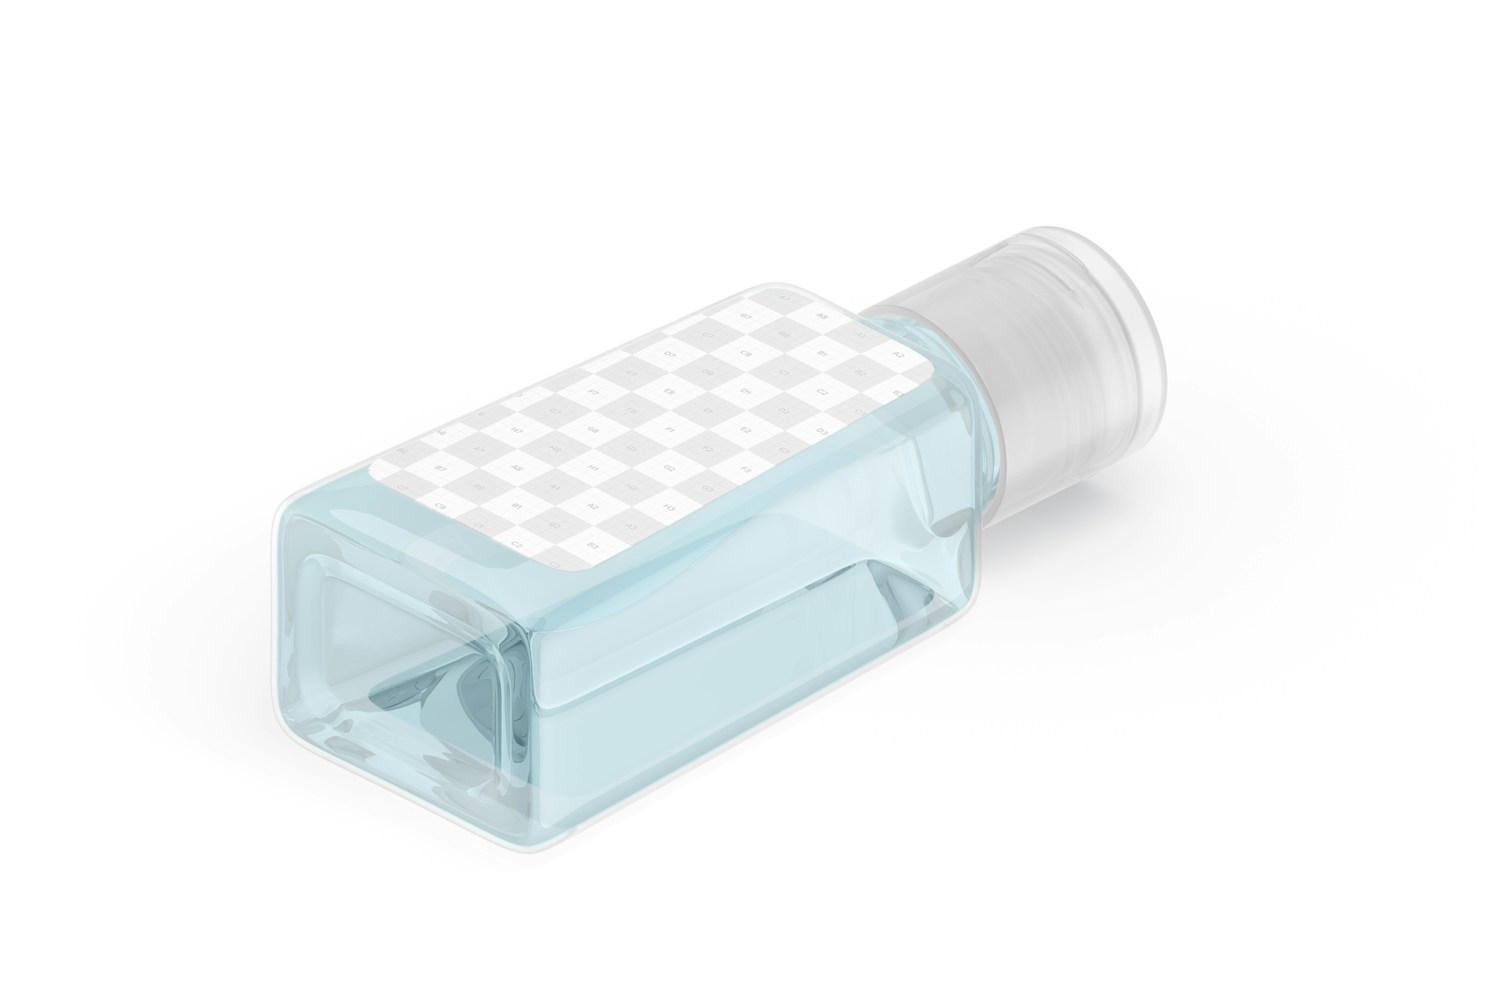 1 Oz Trapezoid Bottle Mockup, Isometric Left View